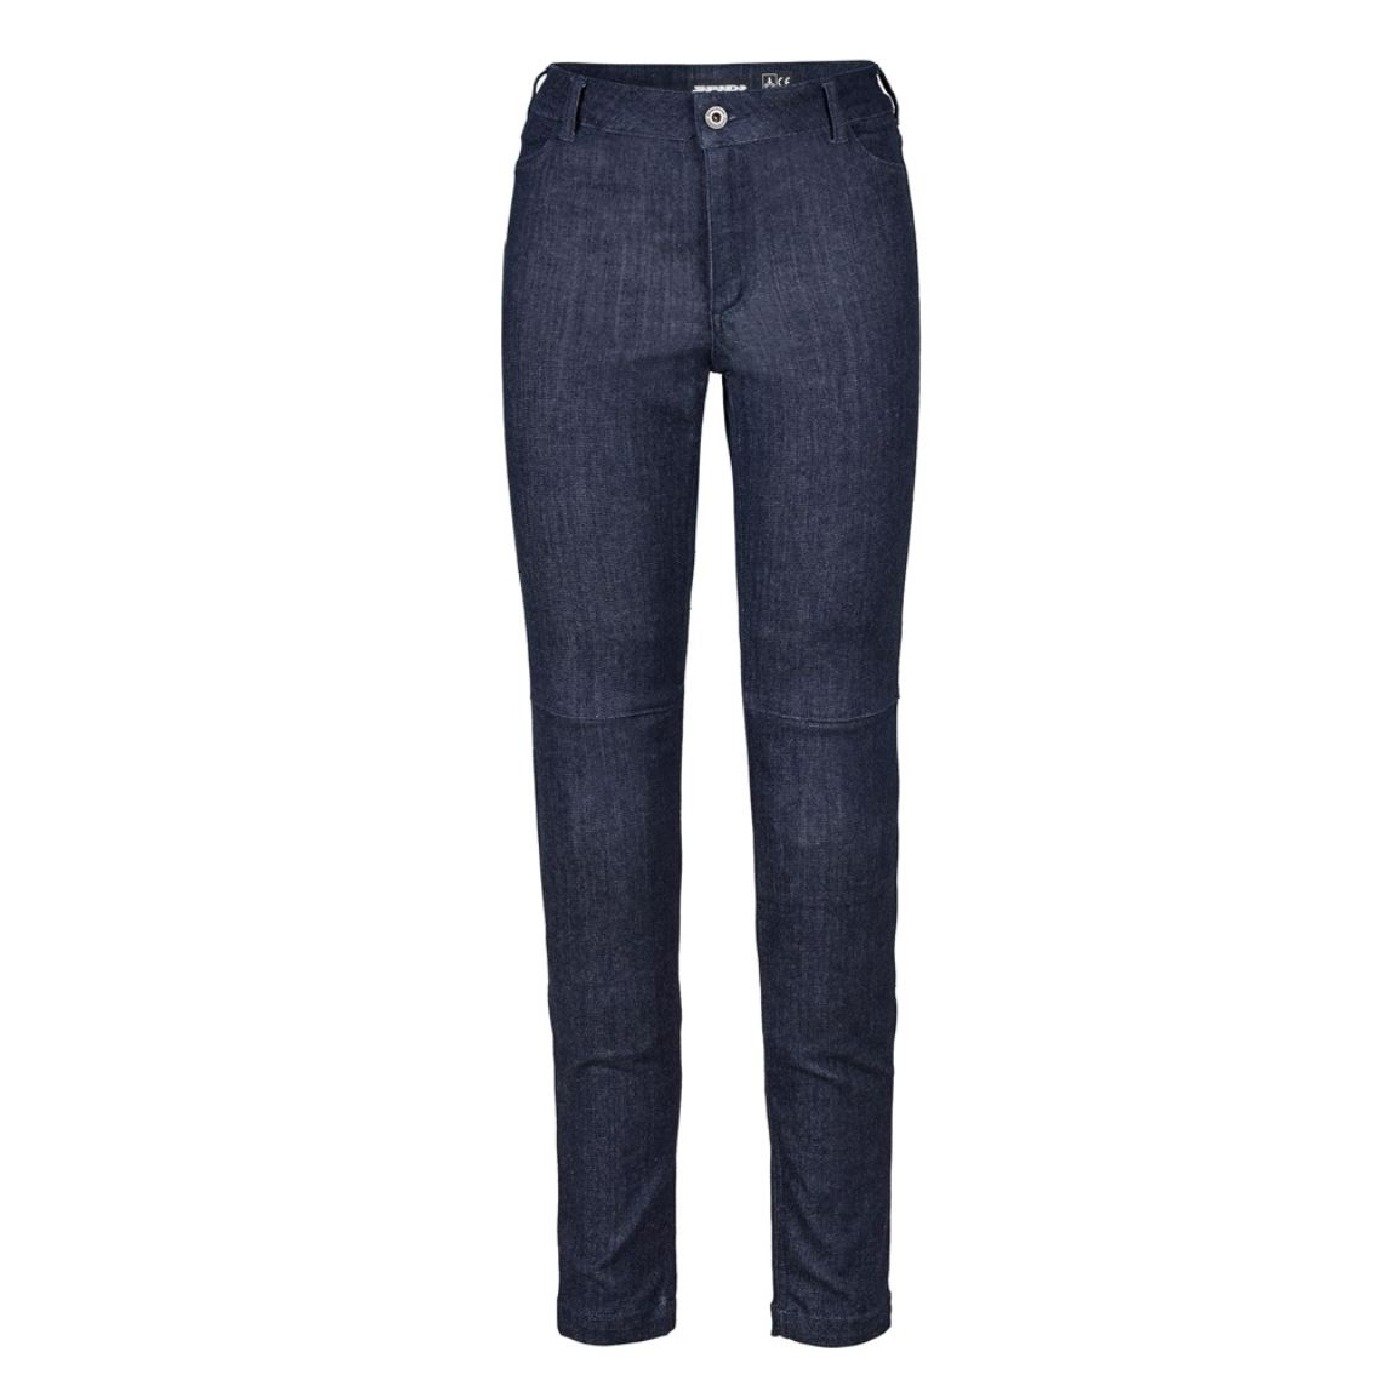 Obrázek produktu kalhoty MOTO JEGGINGS, SPIDI, dámské (modrá) J120-807